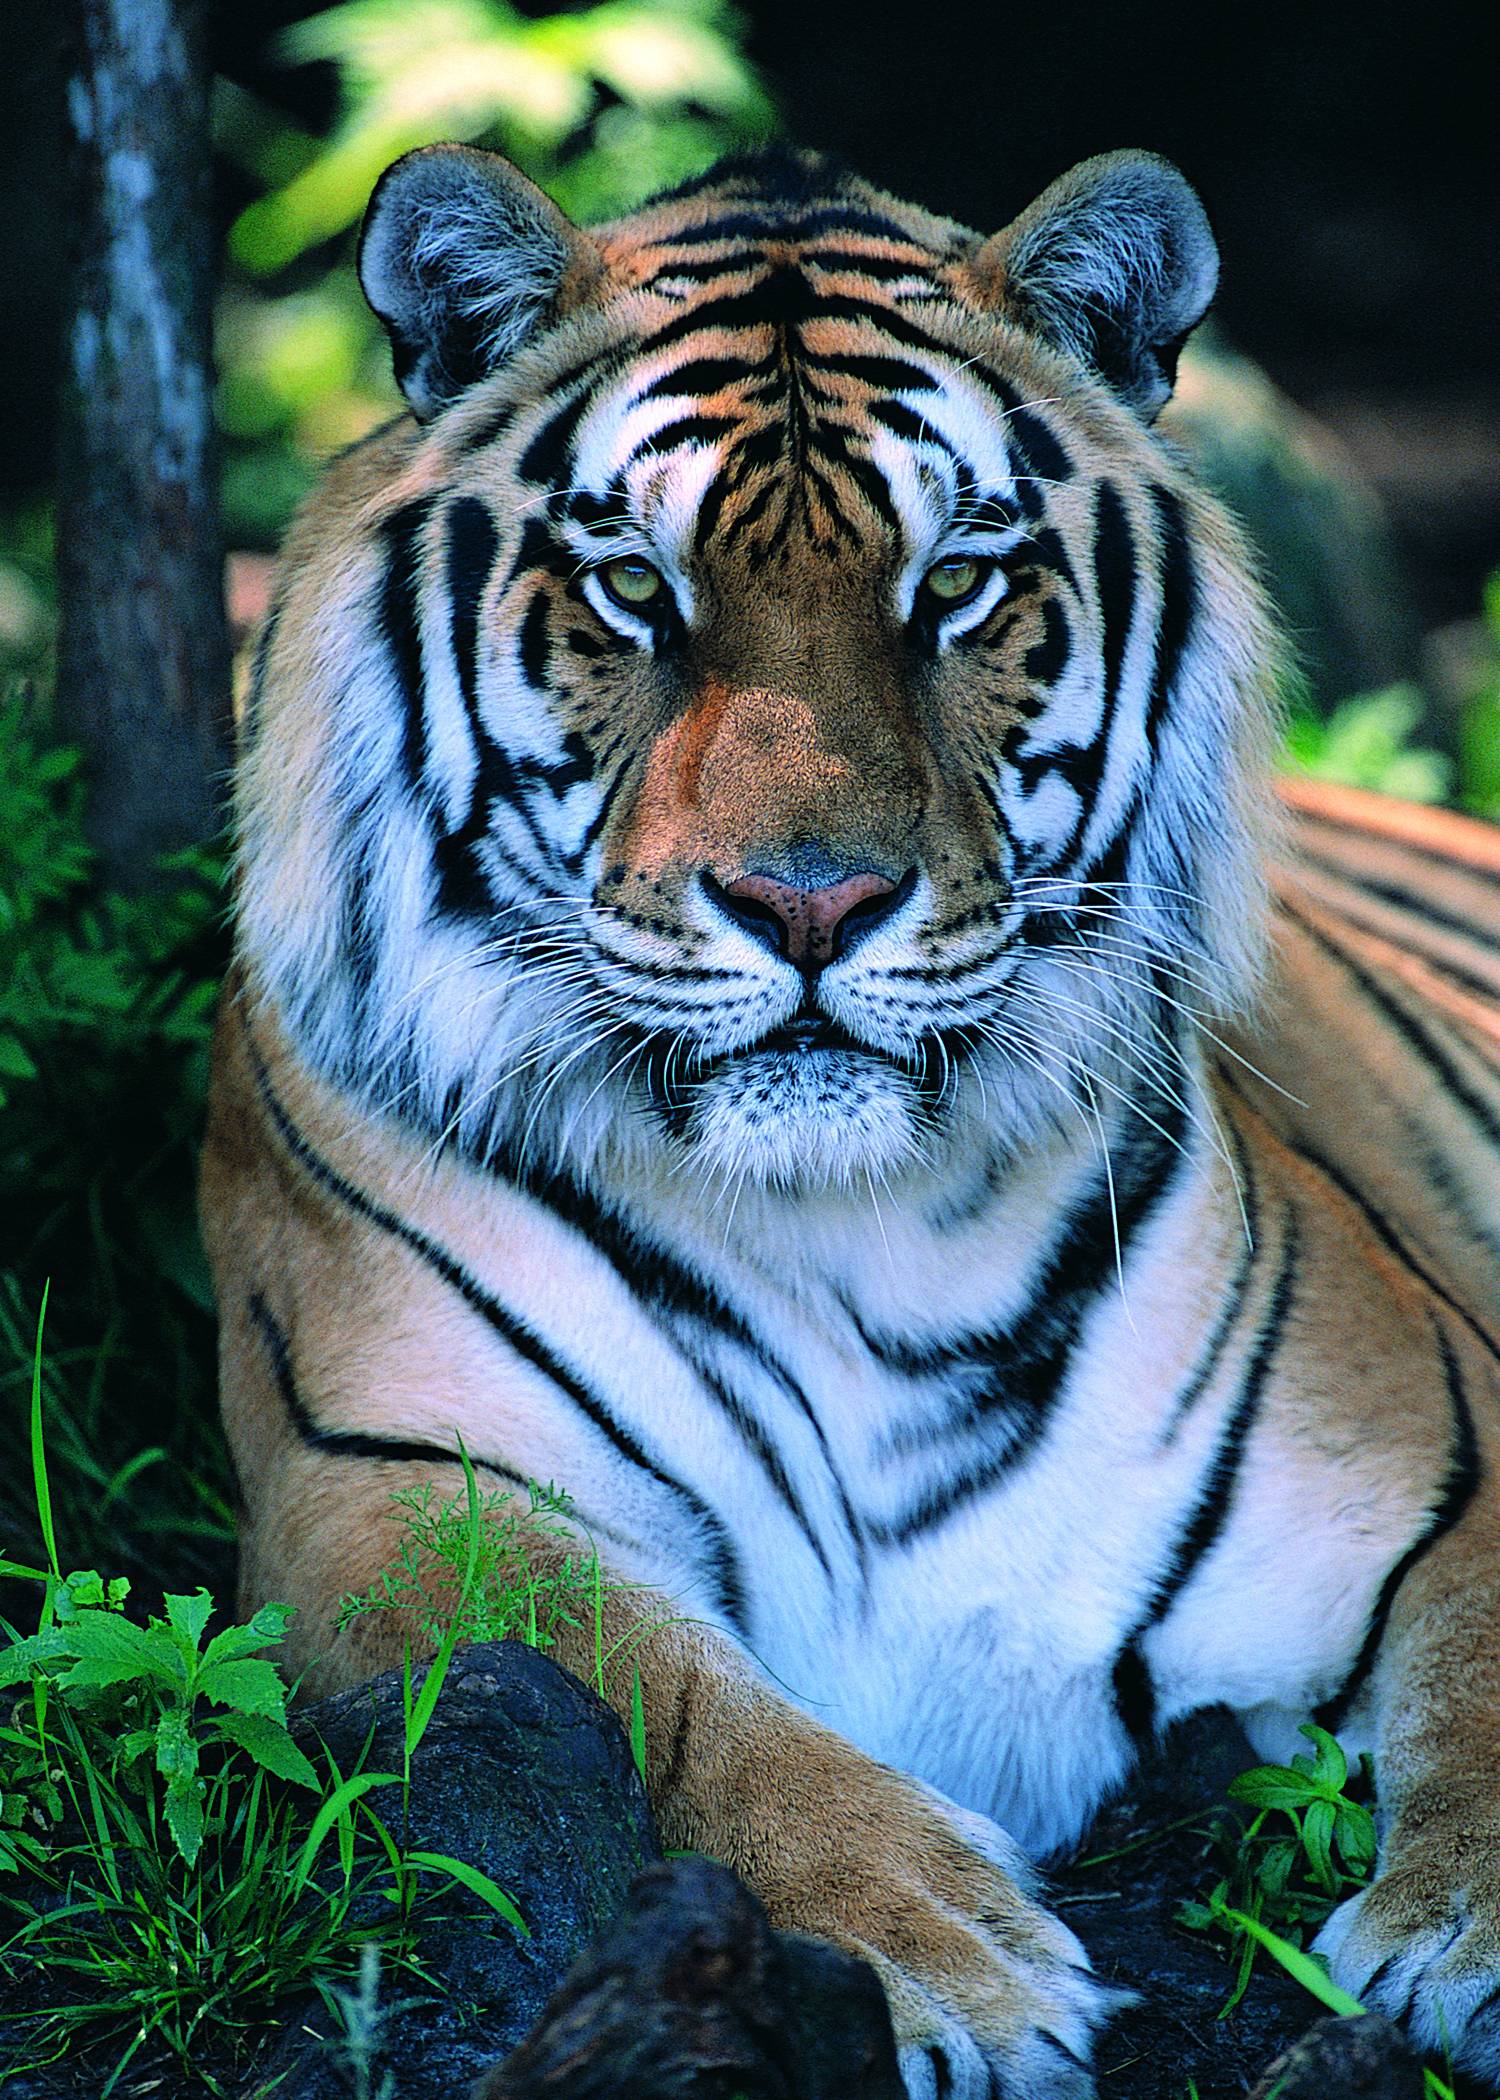 Tiger Images Hd Download - 1500x2100 Wallpaper 